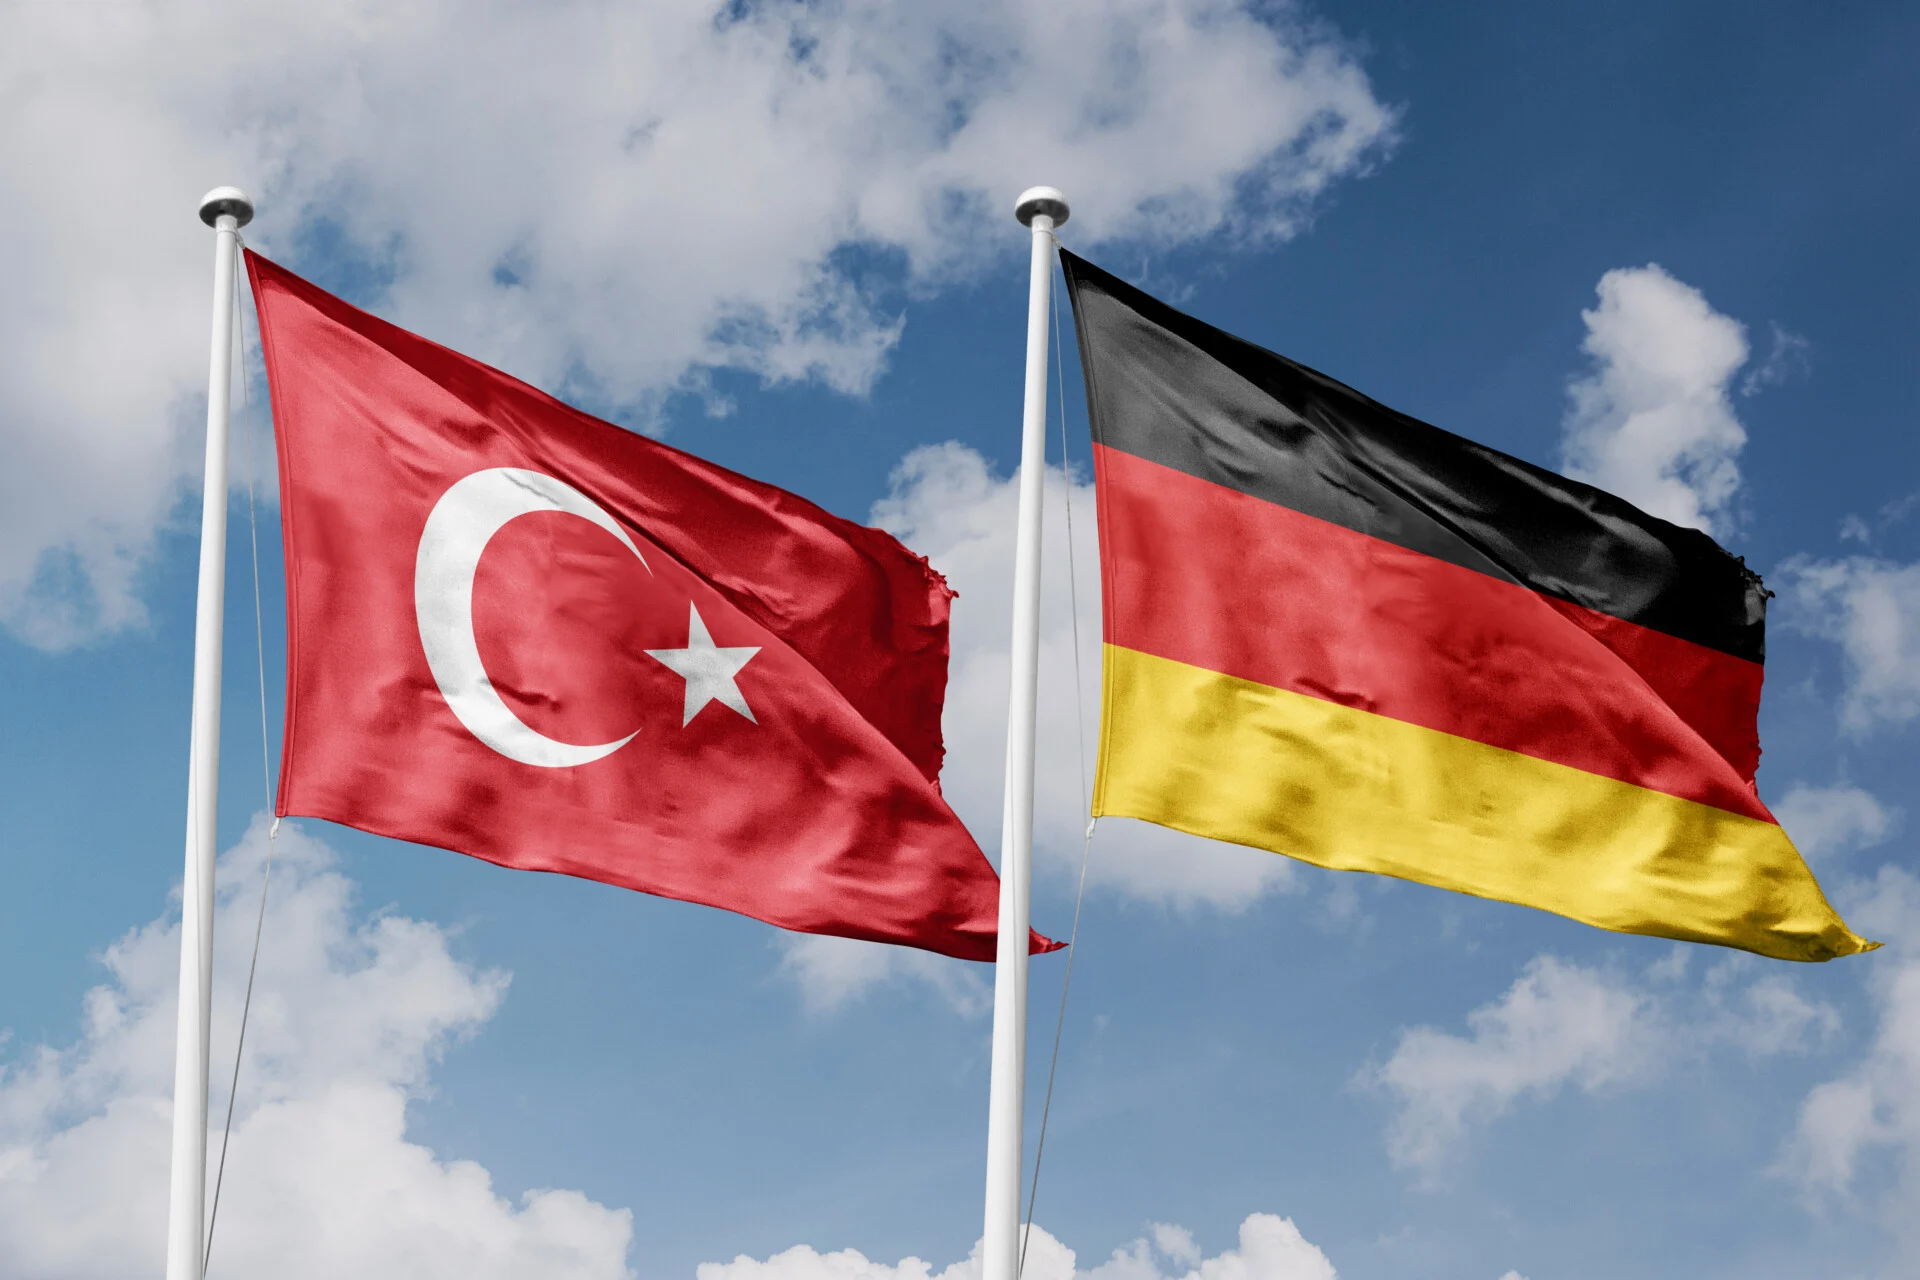 Γερμανικά κόμματα: Πρώτα πραγματική πολιτική αλλαγή και μετά επανάληψη ενταξιακών συνομιλιών ΕΕ-Τουρκίας